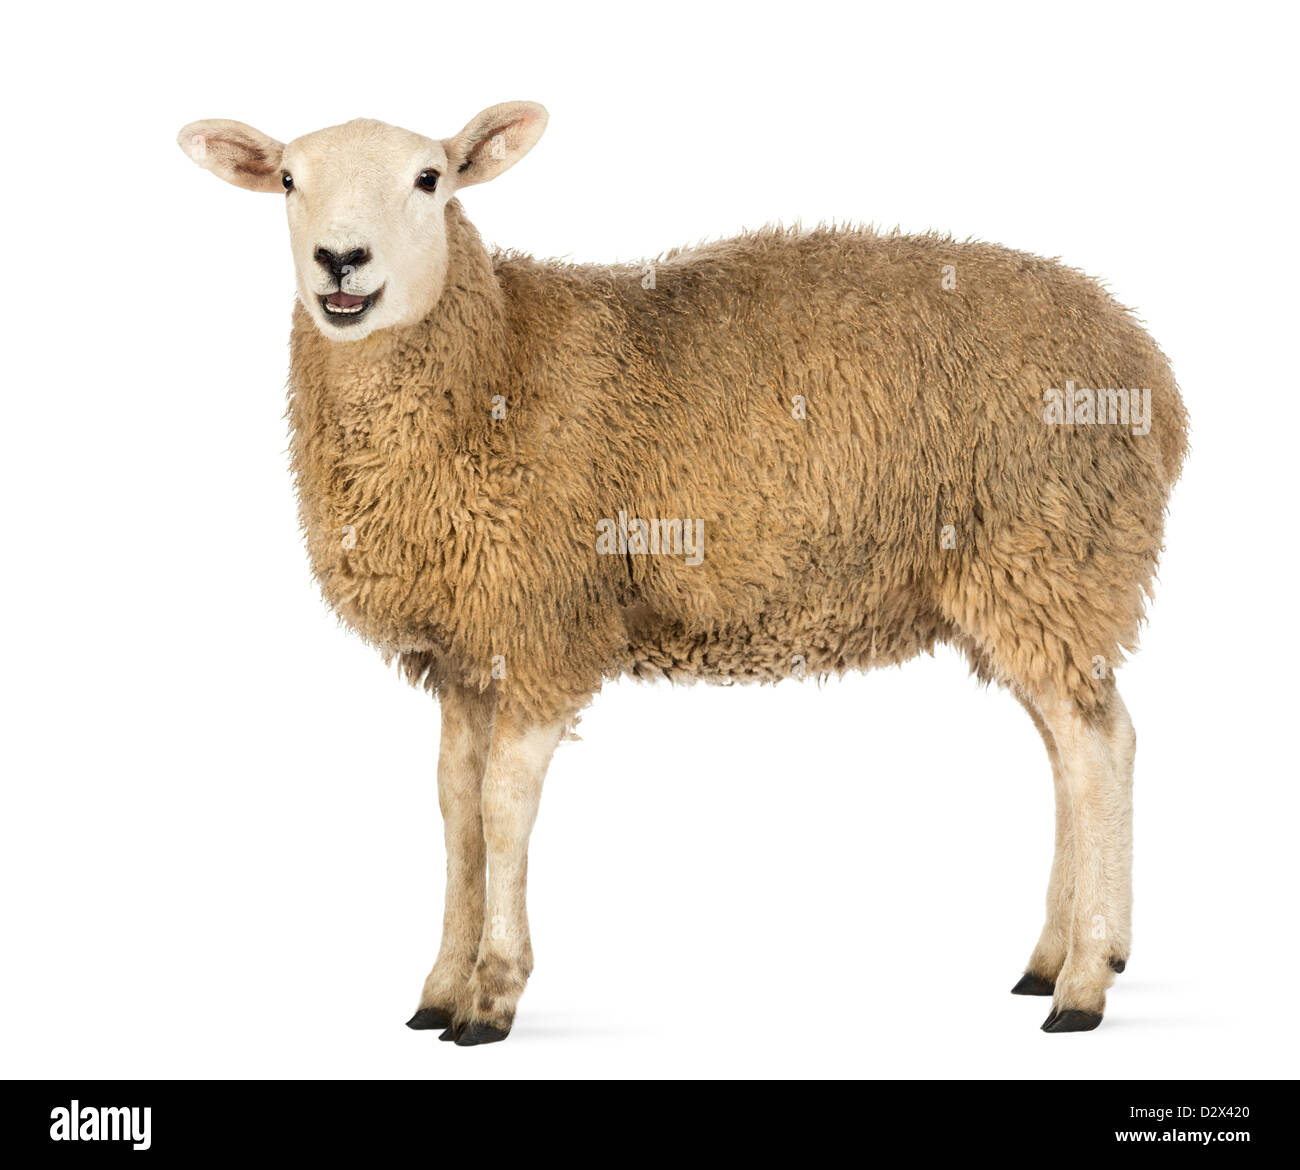 Vista lateral de una oveja mirando la cámara de pie delante de un fondo blanco Foto de stock